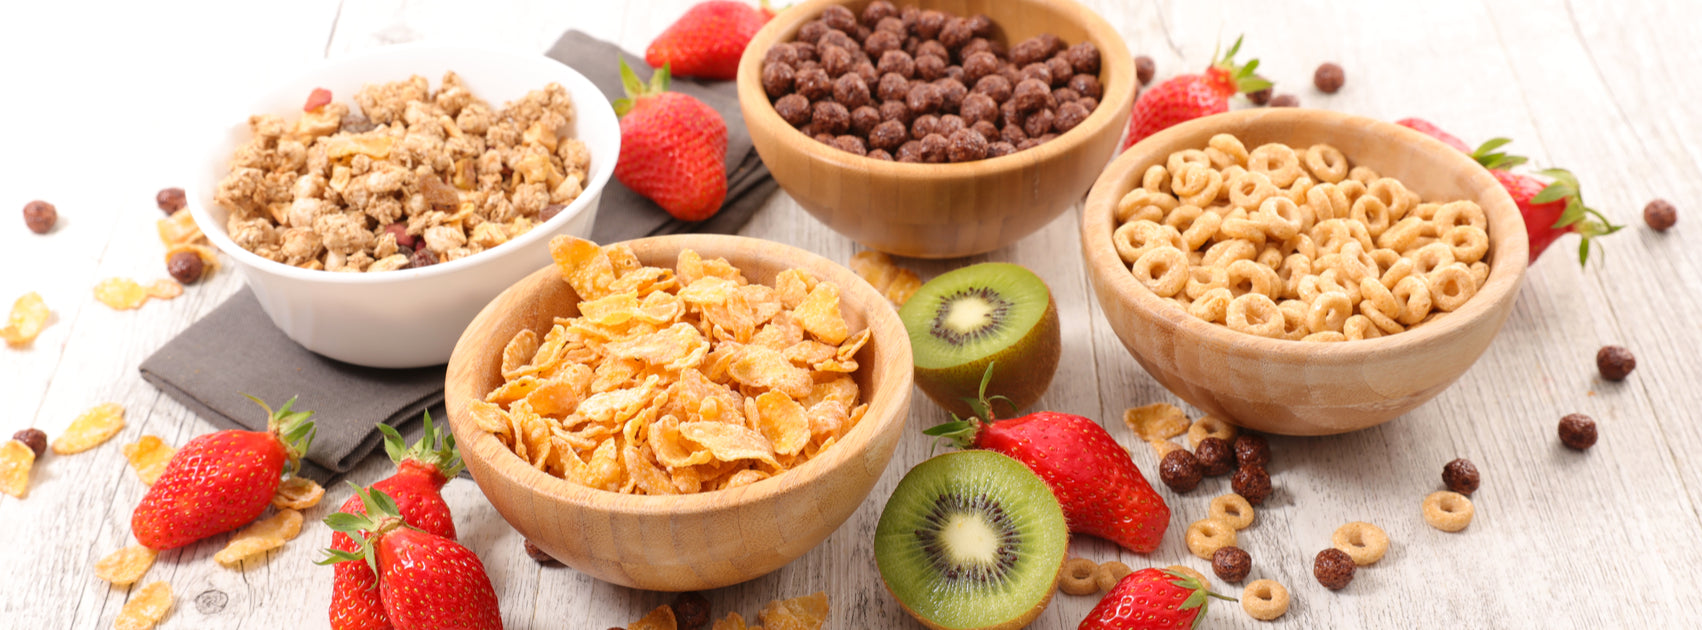 Cereals & Breakfast Foods